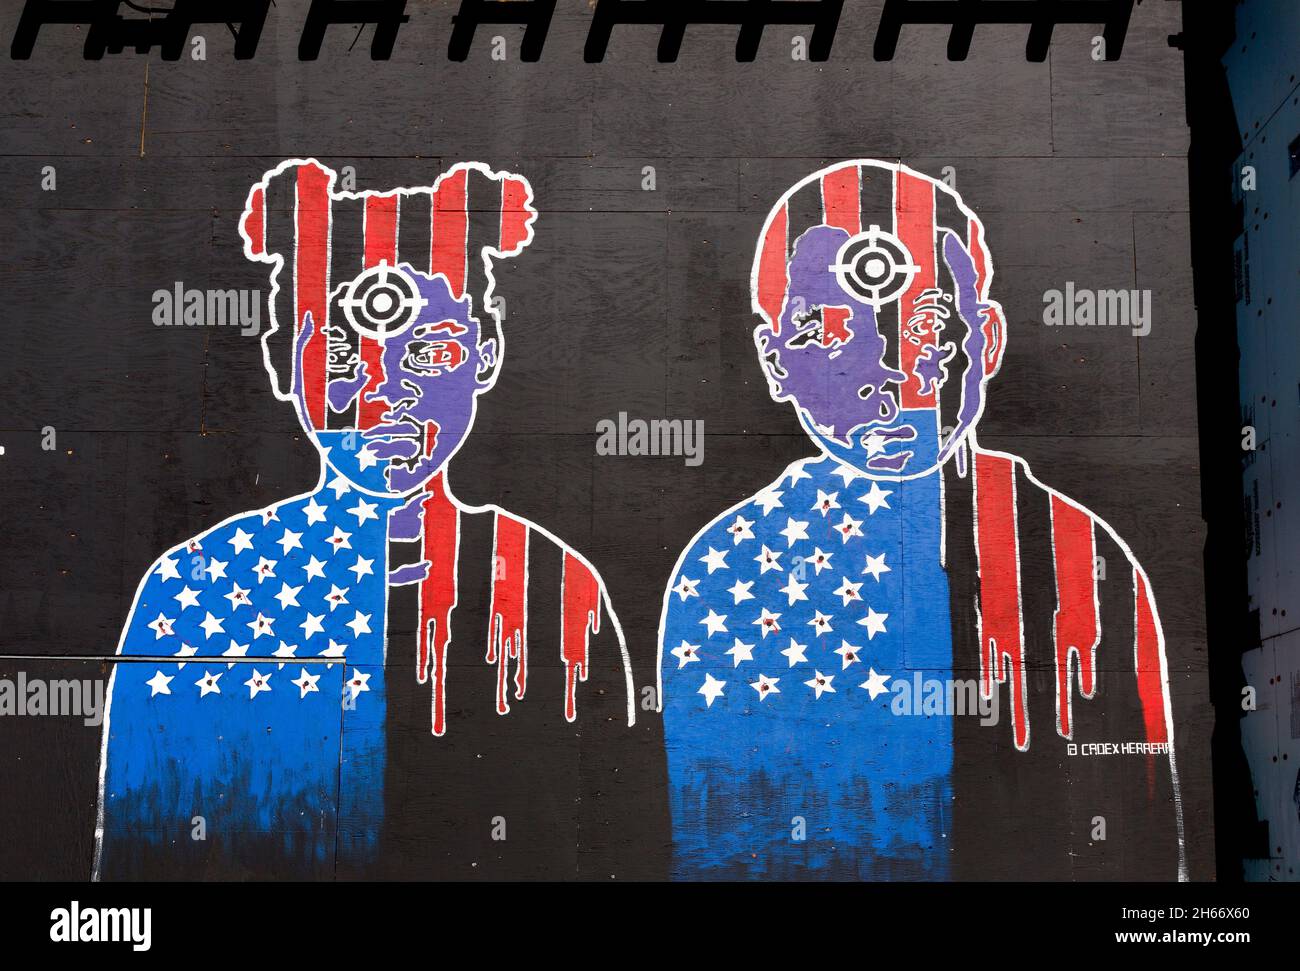 Dettaglio di un murale del progetto Black While incompiuto di Cadex Herrera con due giovani con obiettivi di vista pistola sulla fronte che illustrano th Foto Stock